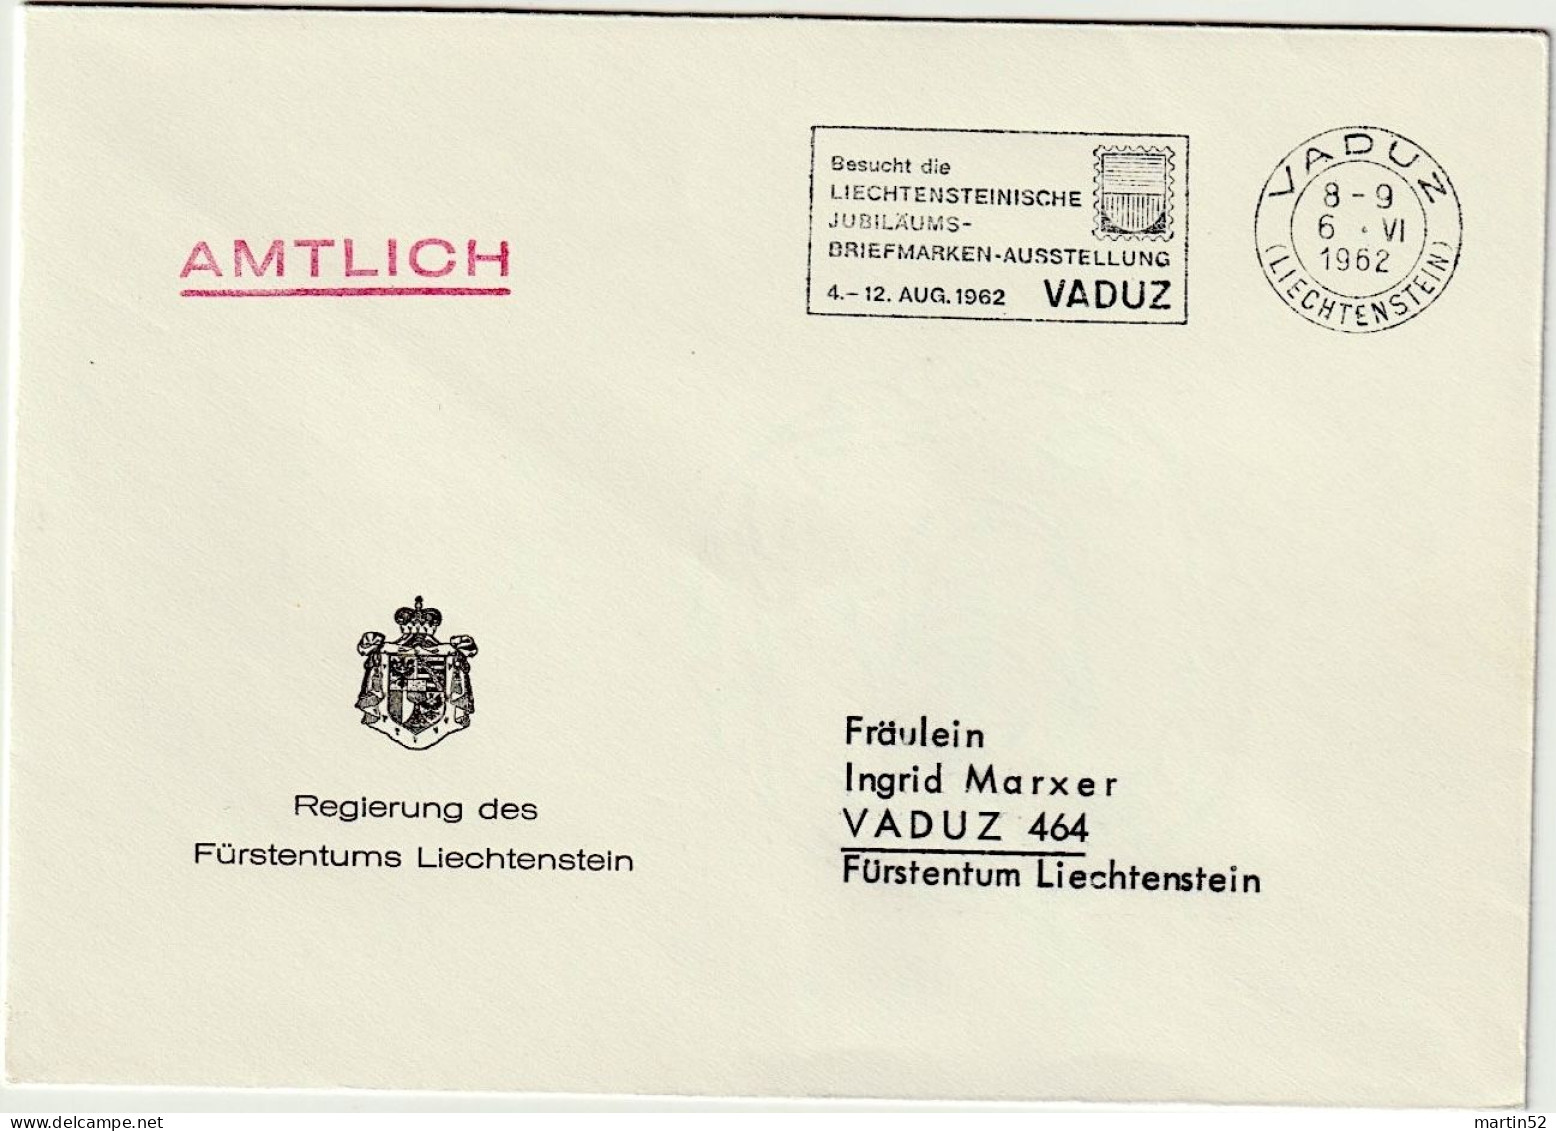 Liechtenstein 1962: Regierung Des F.L. AMTLICH Mit ⊙ VADUZ 6.VI.1962 Besucht Die Jubiläums-Briefmarken-Ausstellung - Servizio